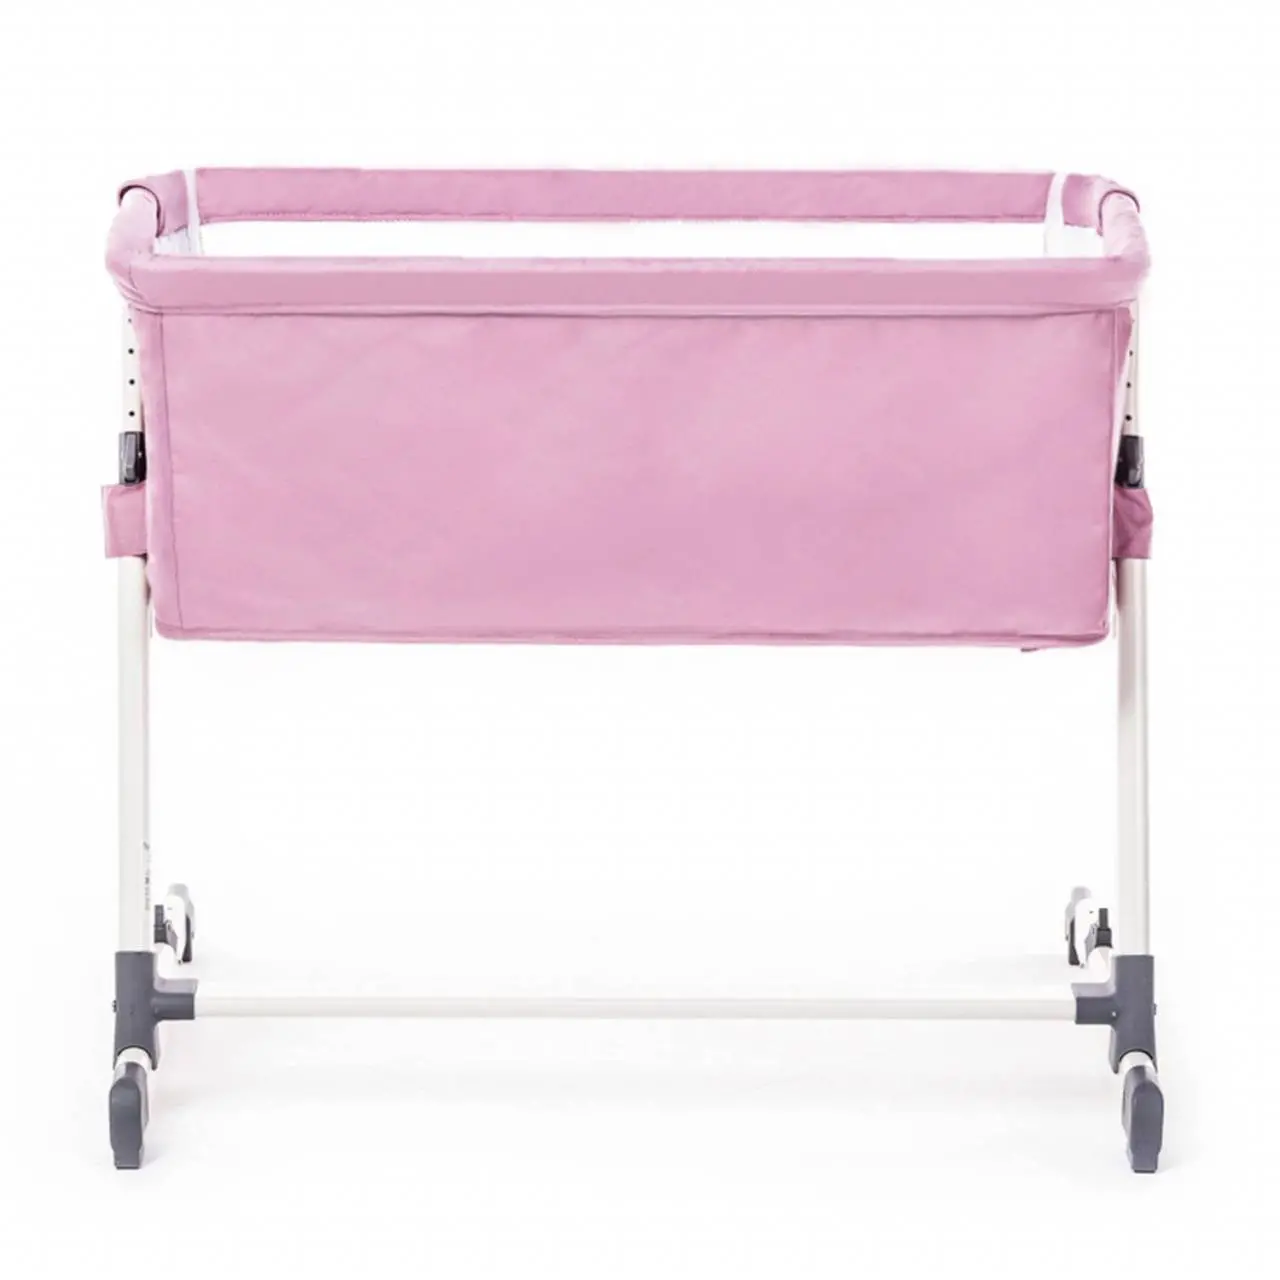 Приставная кровать Nuovita Accanto 85х48 без качания Цвет:Rosa/Розовый